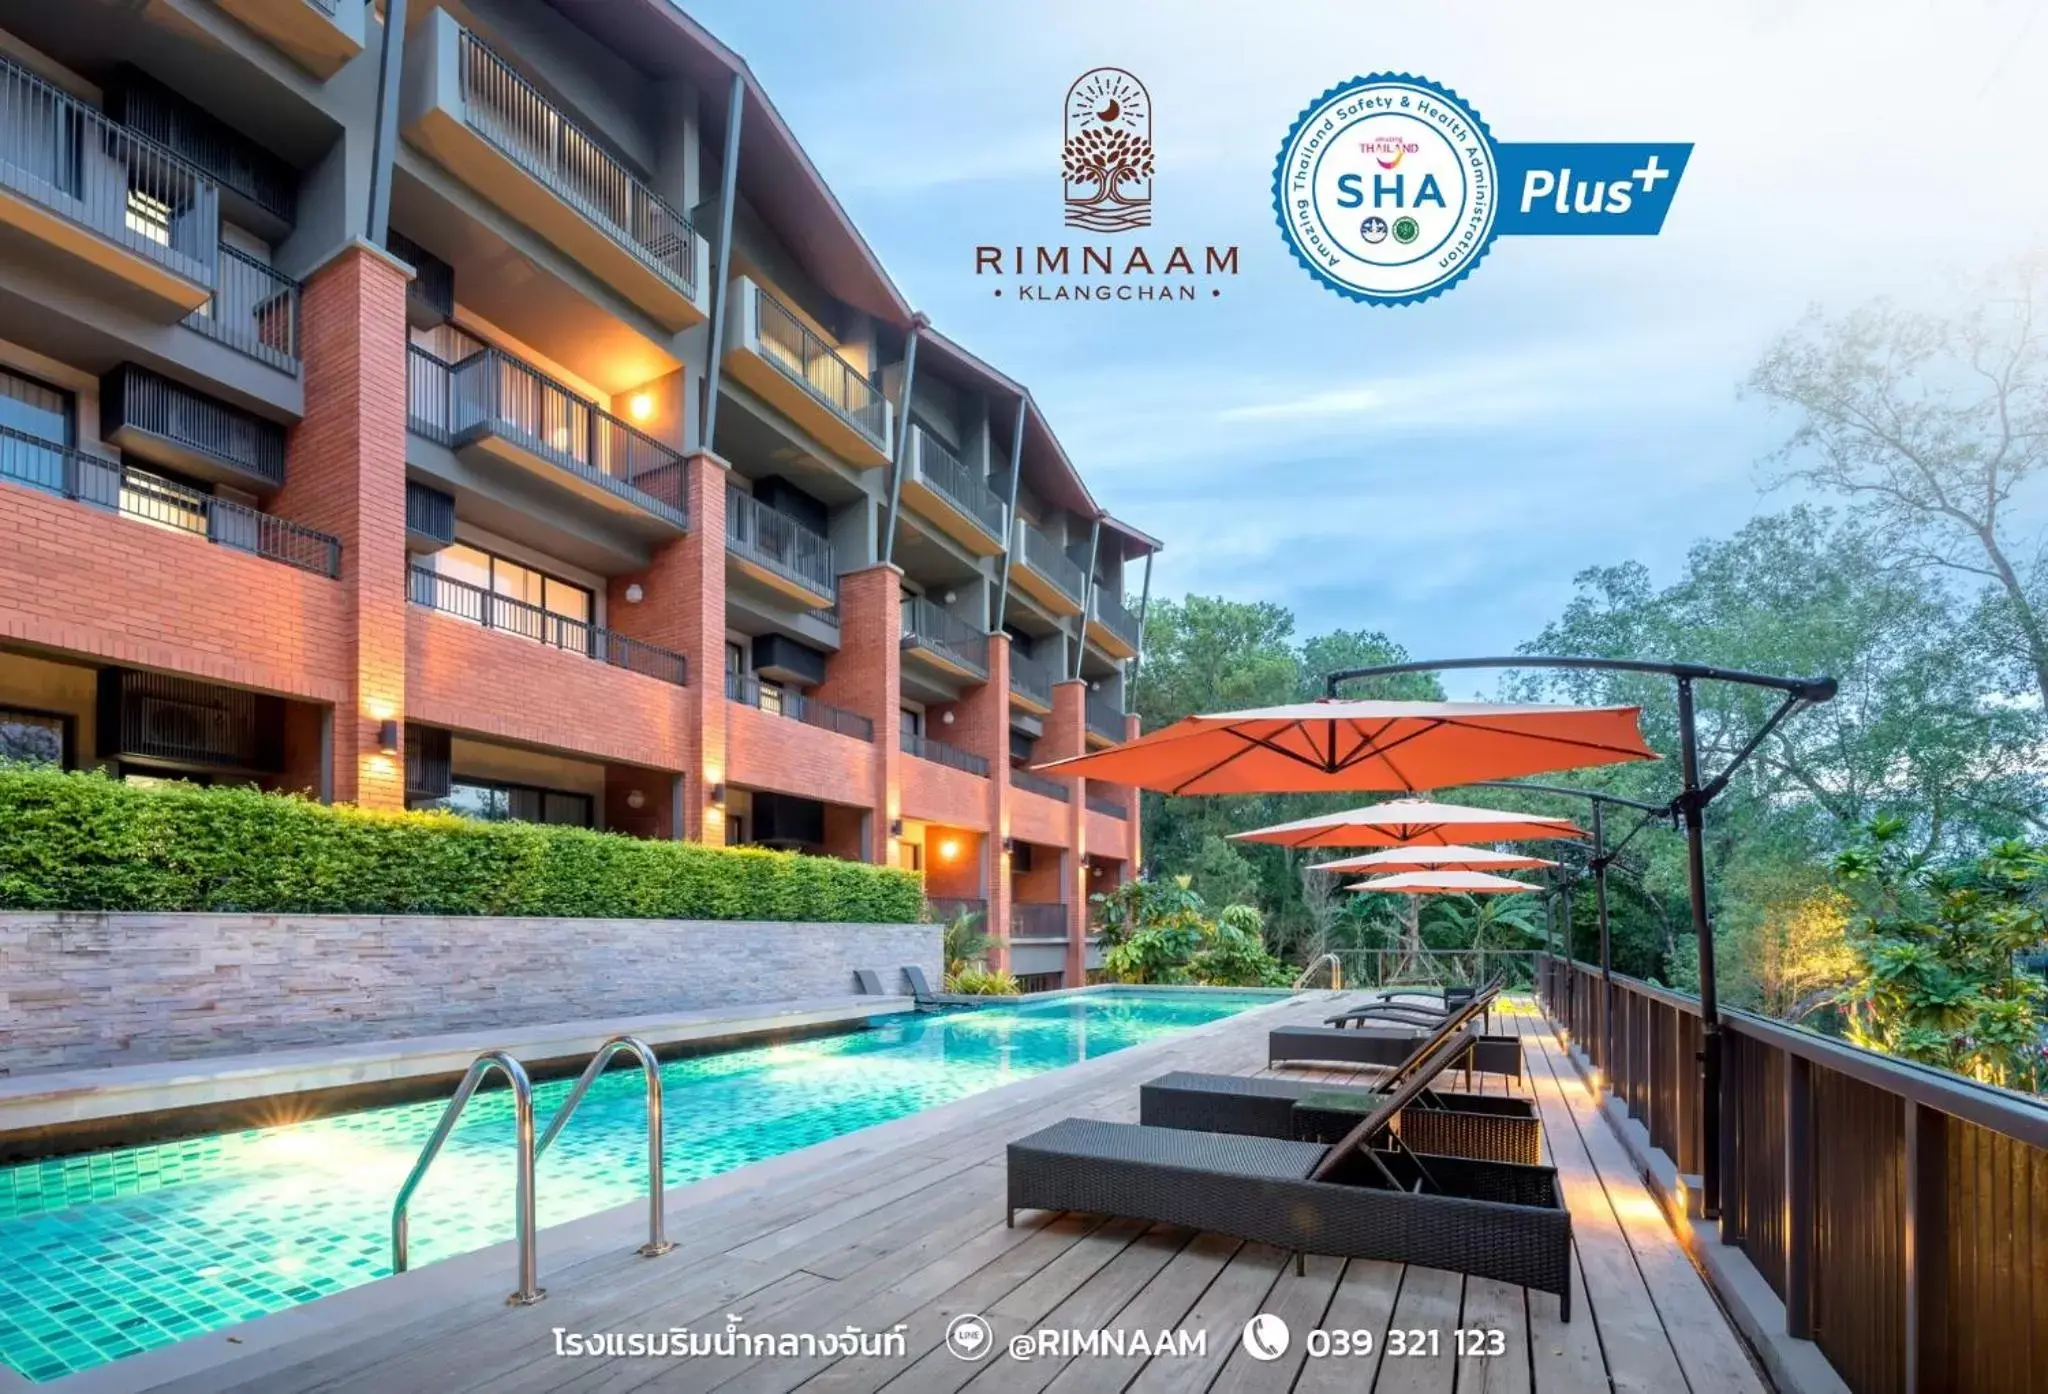 Property Building in Rimnaam Klangchan Hotel - SHA Plus